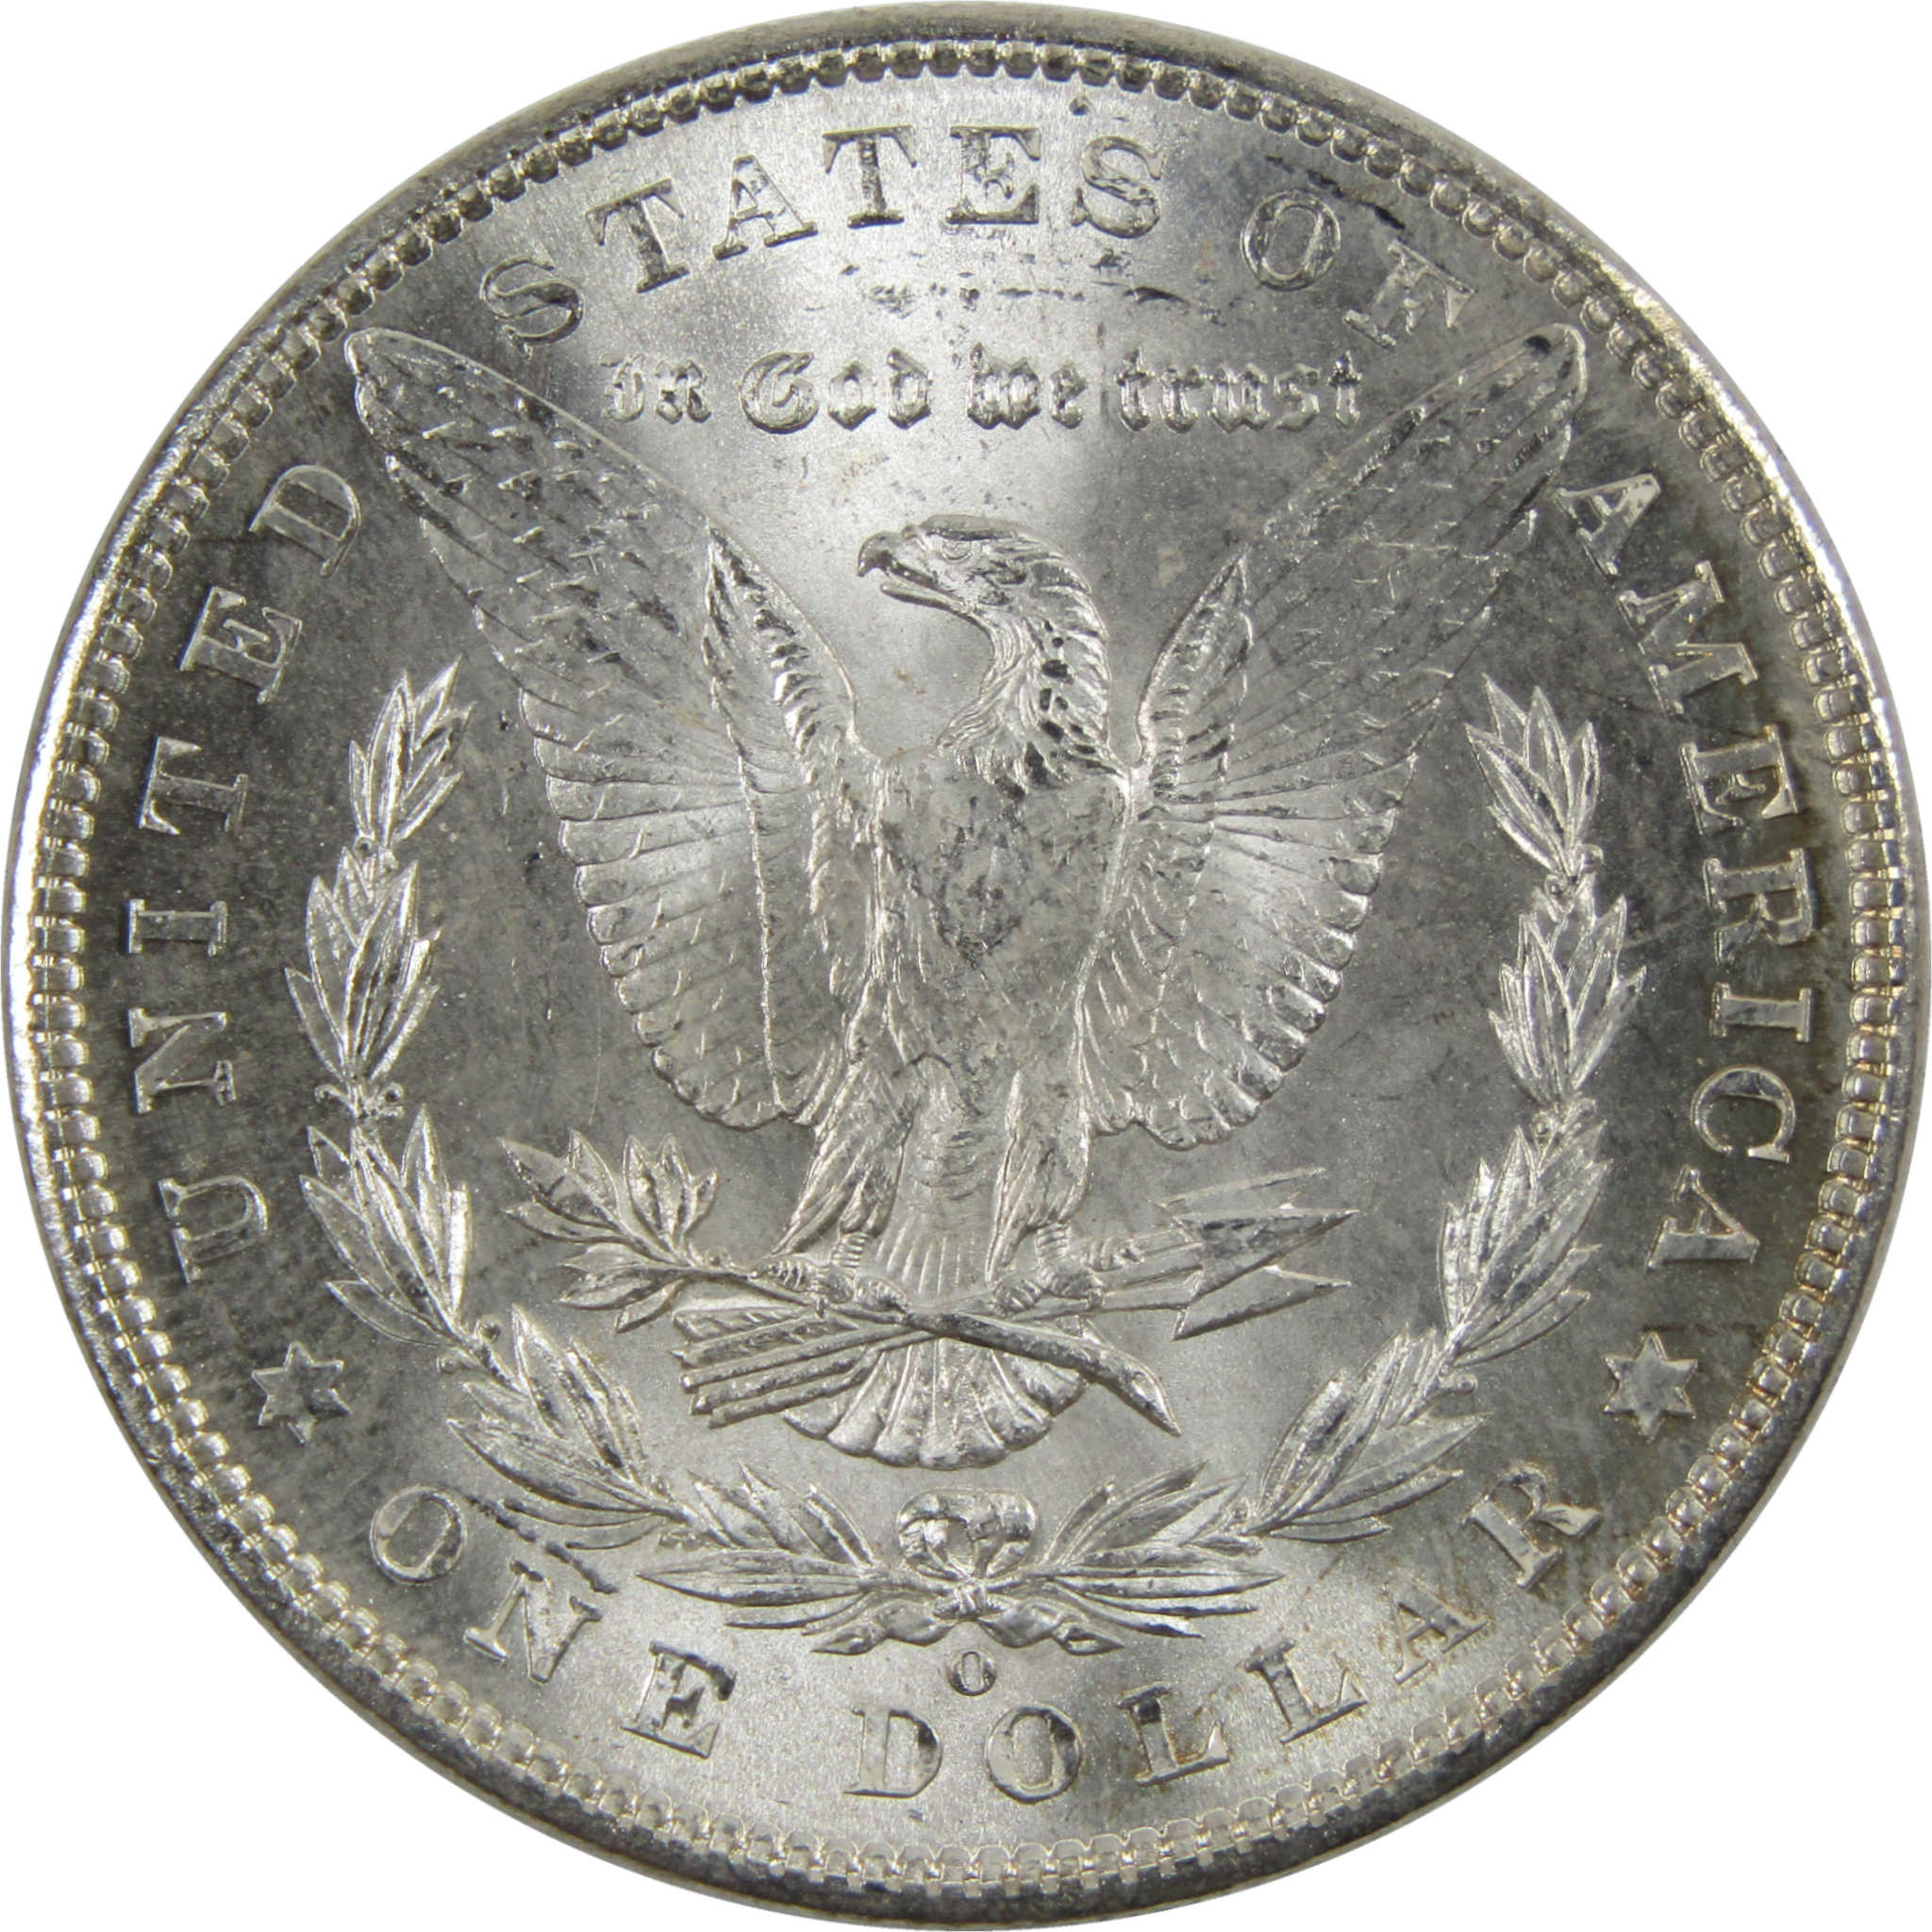 1902 O Morgan Dollar BU Uncirculated 90% Silver $1 Coin SKU:I6040 - Morgan coin - Morgan silver dollar - Morgan silver dollar for sale - Profile Coins &amp; Collectibles